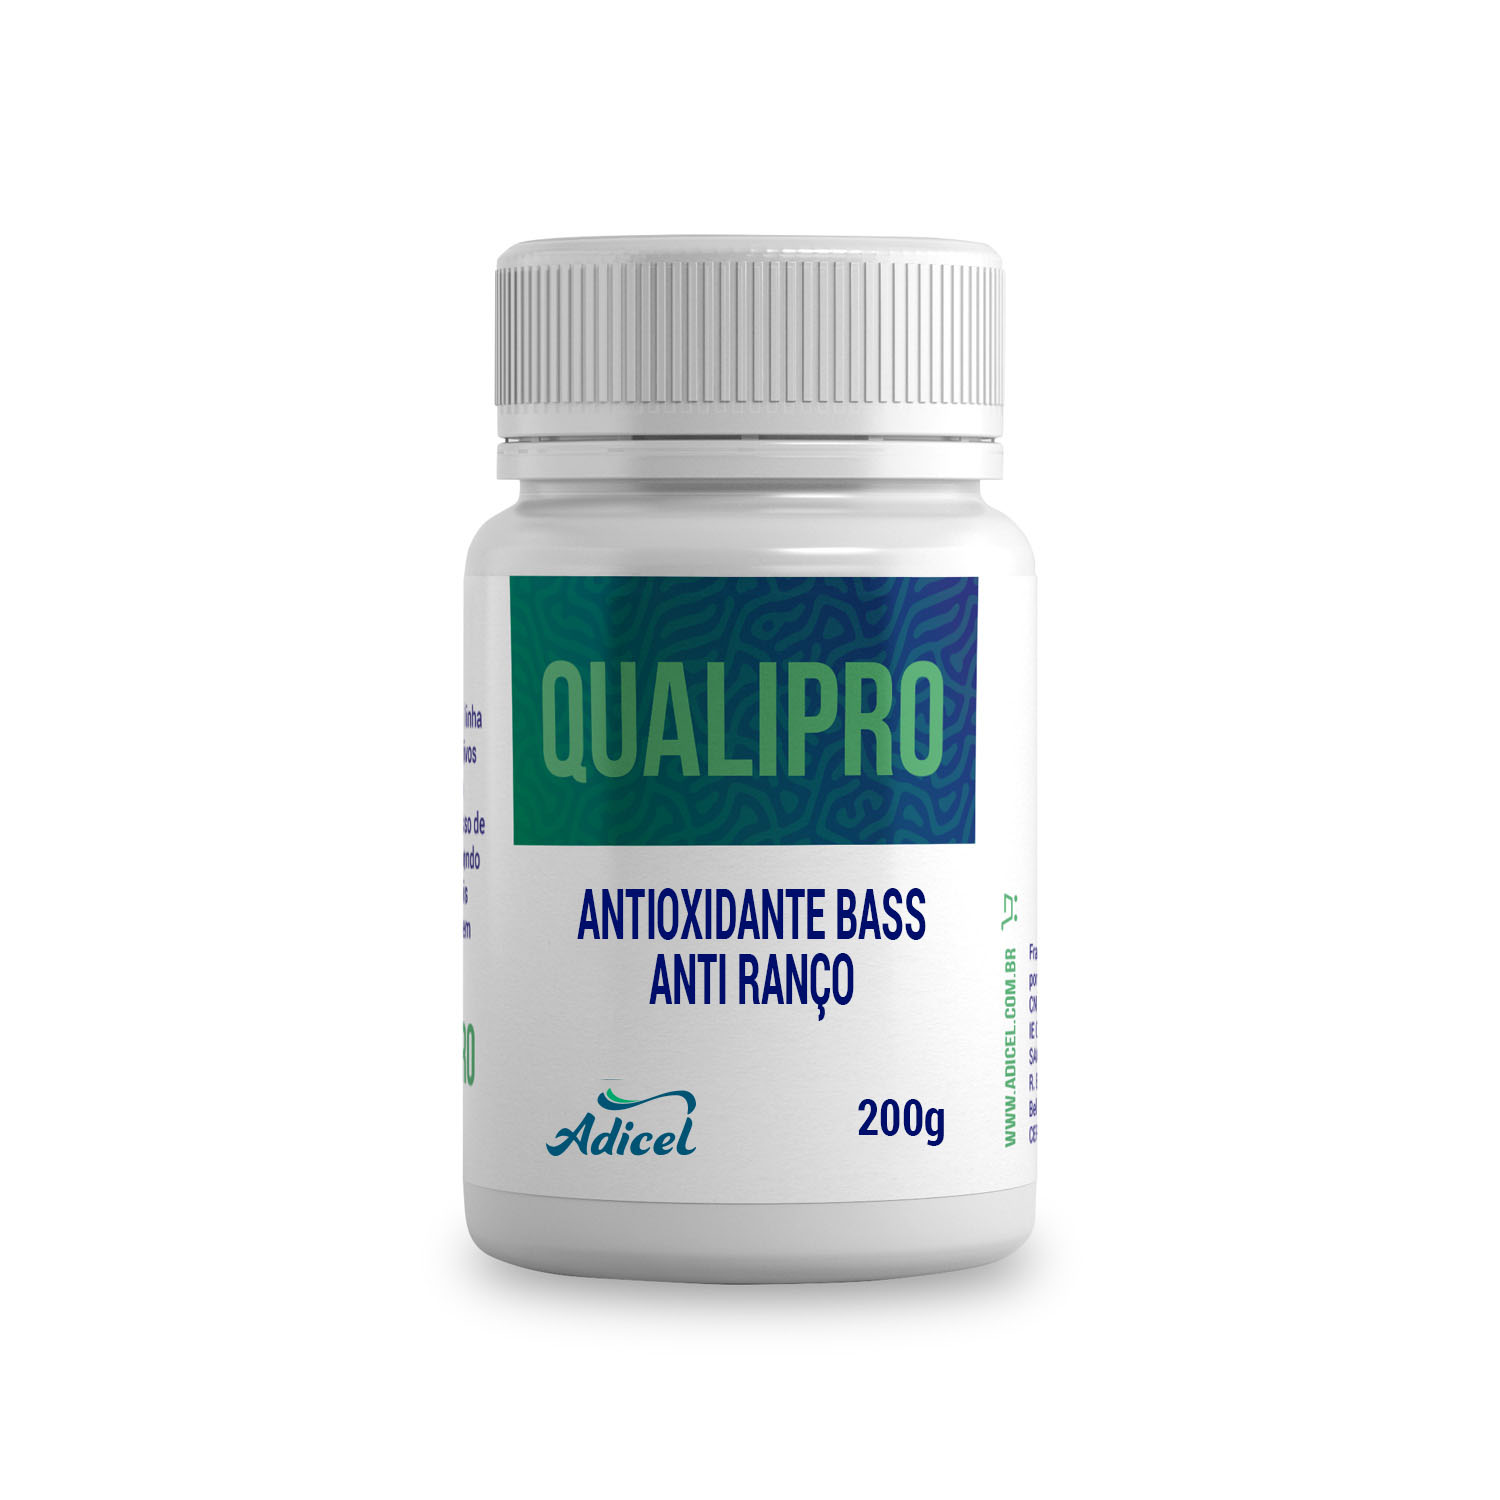 Antioxidante Bass - 200g